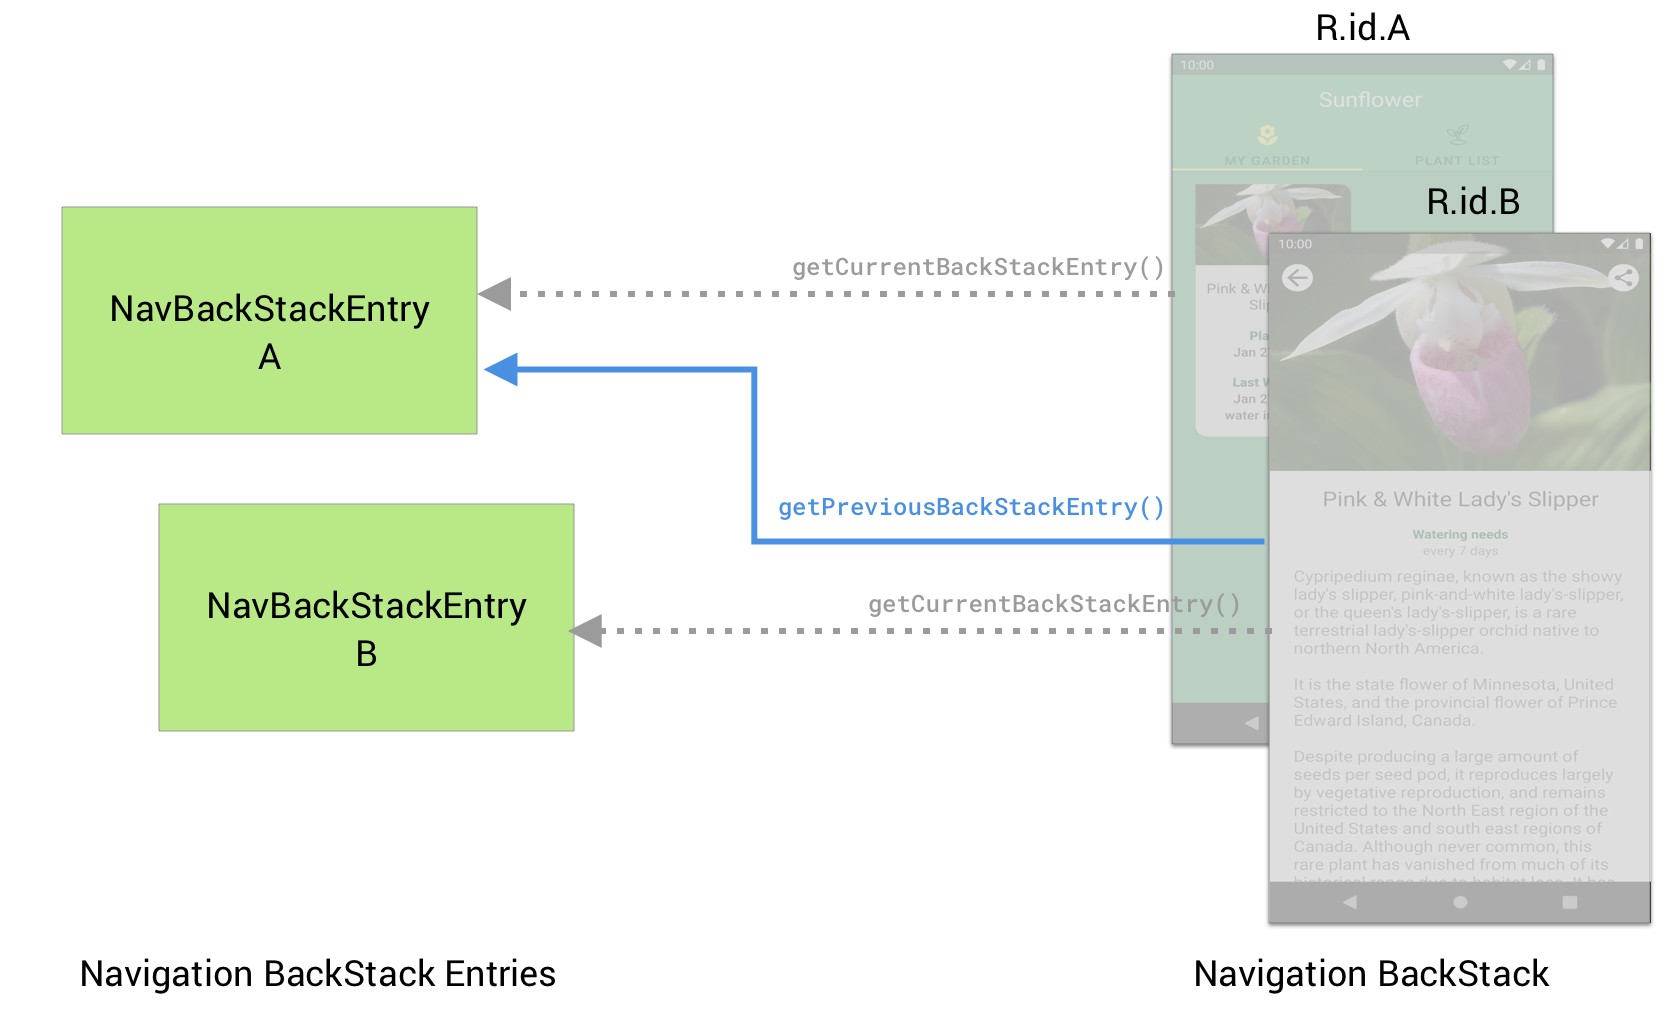 デスティネーション B は getPreviousBackStackEntry() を使用して、前のデスティネーション A の NavBackStackEntry を取得できる